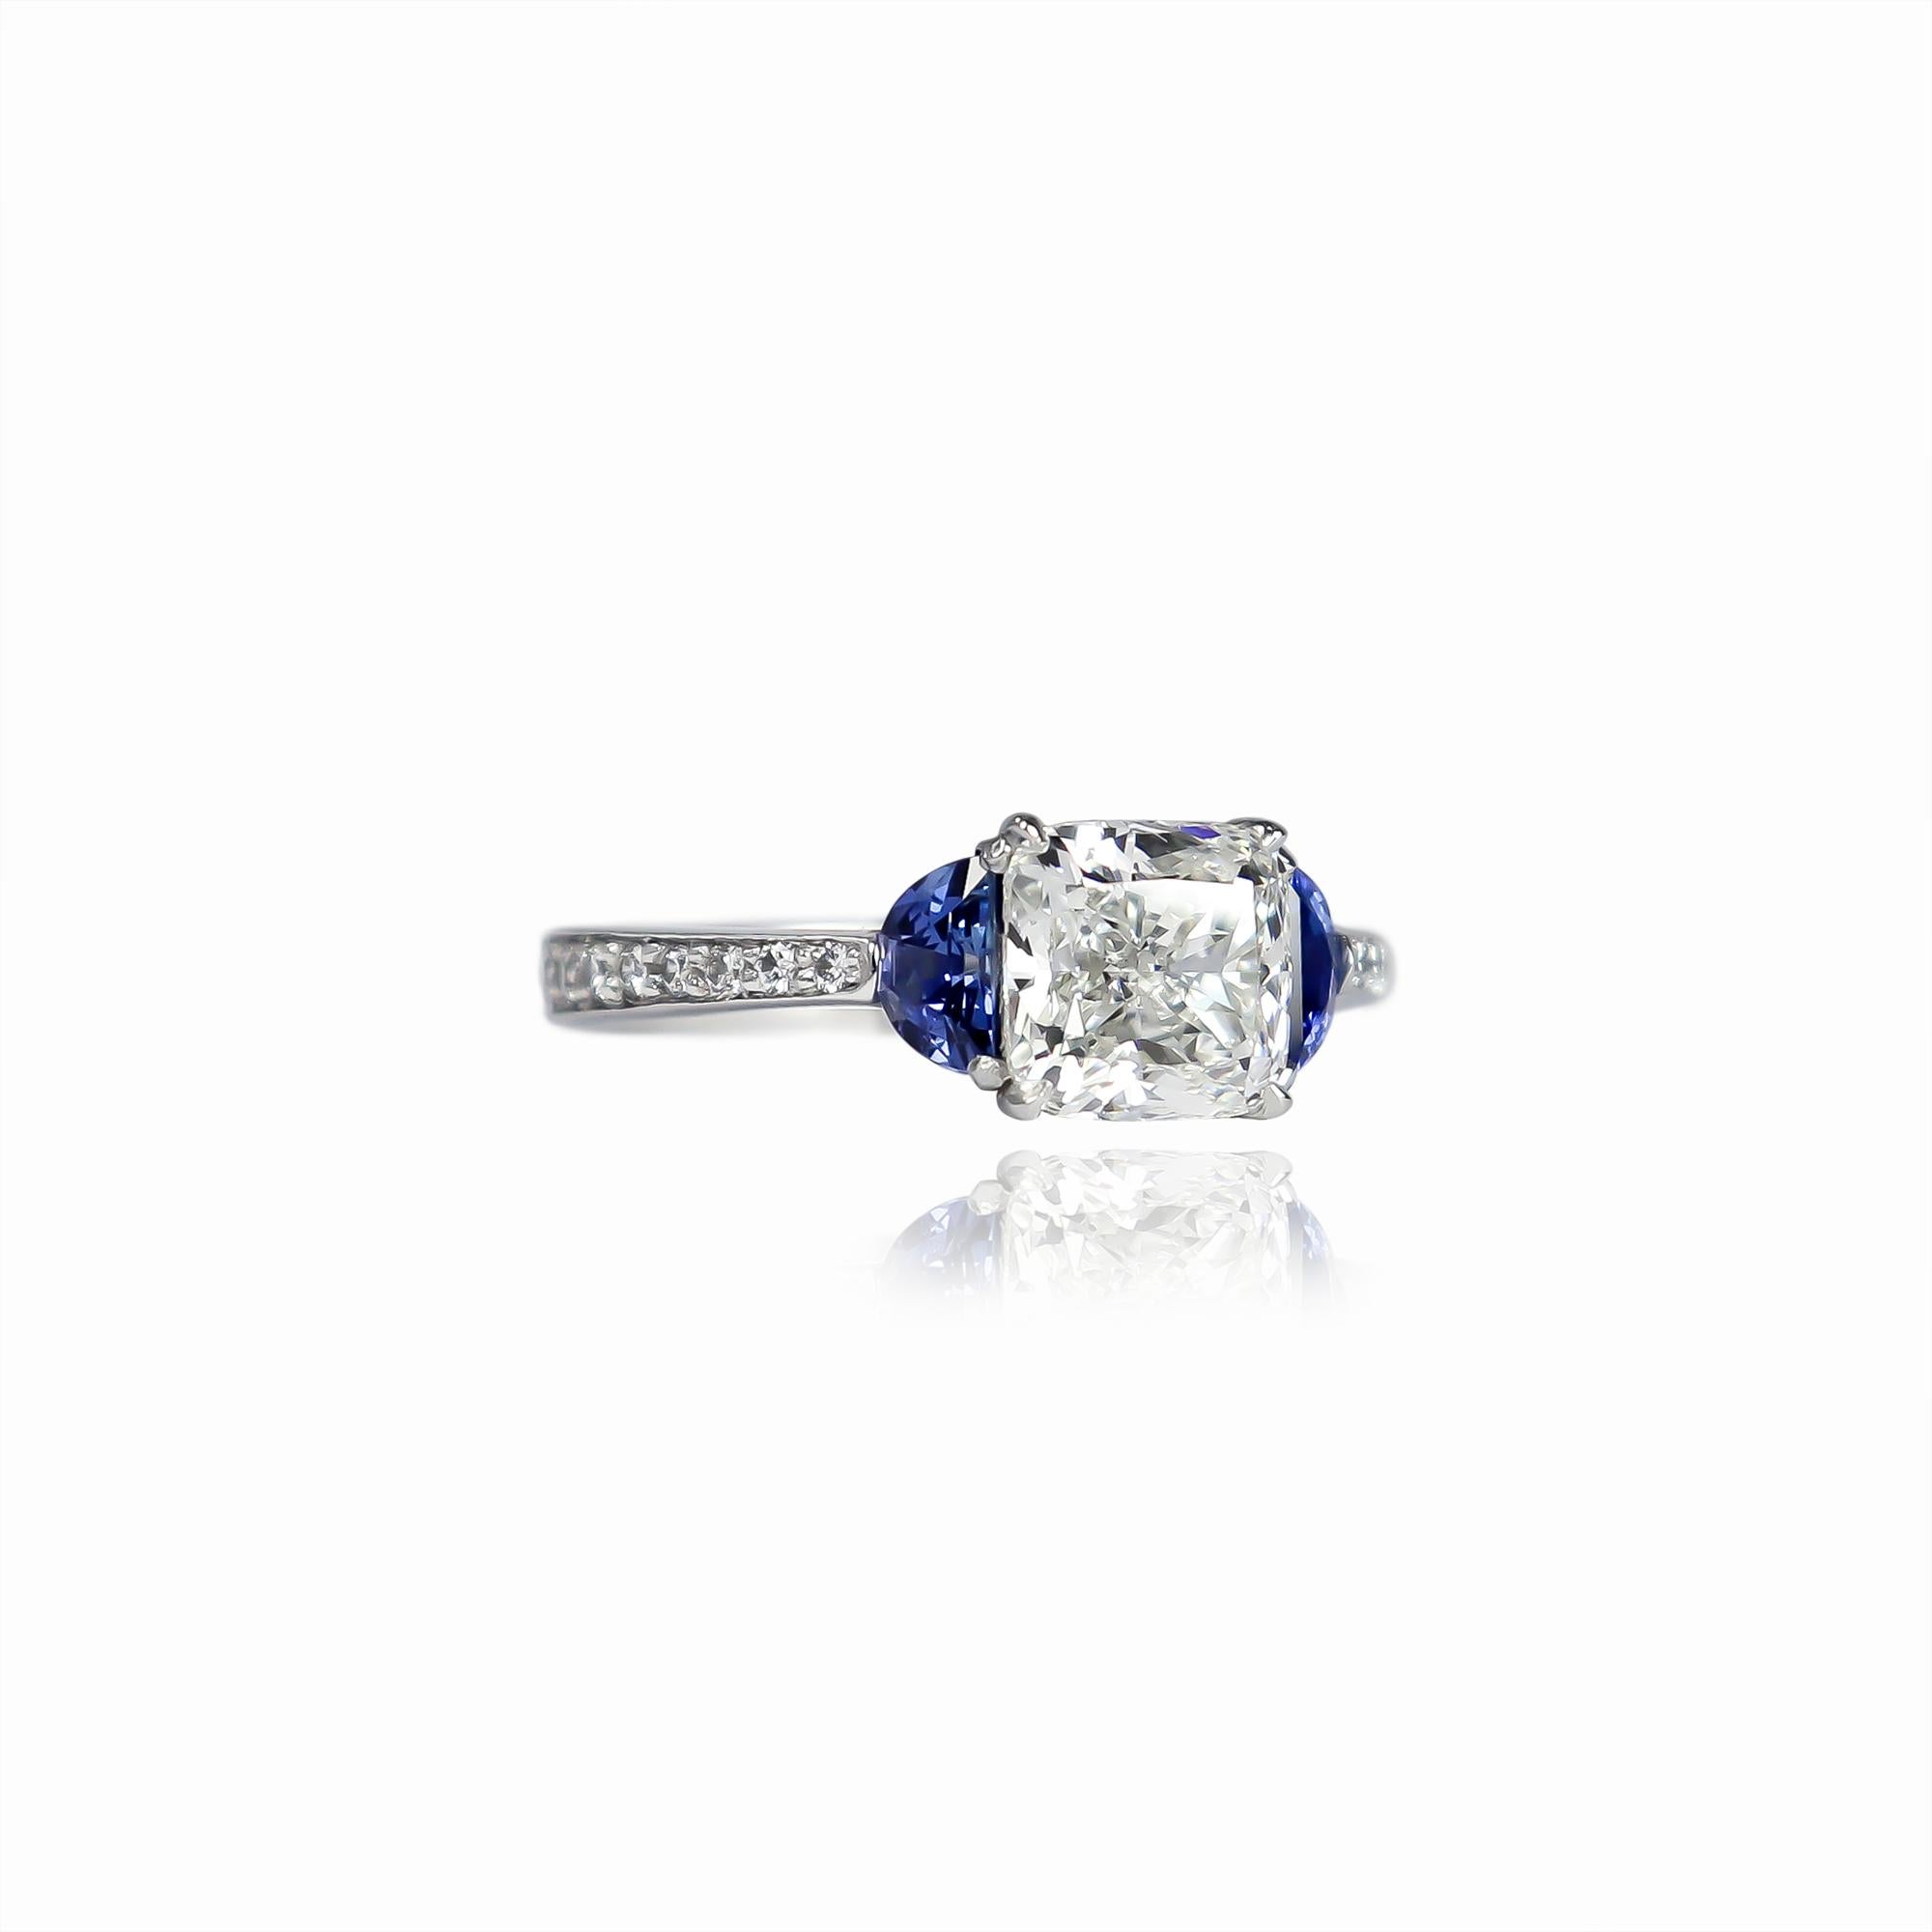 Dieser wunderschöne neue Ring aus der Werkstatt von J. Birnbach ist mit einem GIA-zertifizierten Diamanten von 1,84 Karat im kissenförmigen modifizierten Brillantschliff mit der Farbe F und der Reinheit VS1 ausgestattet, wie im GIA-Gutachten Nr.